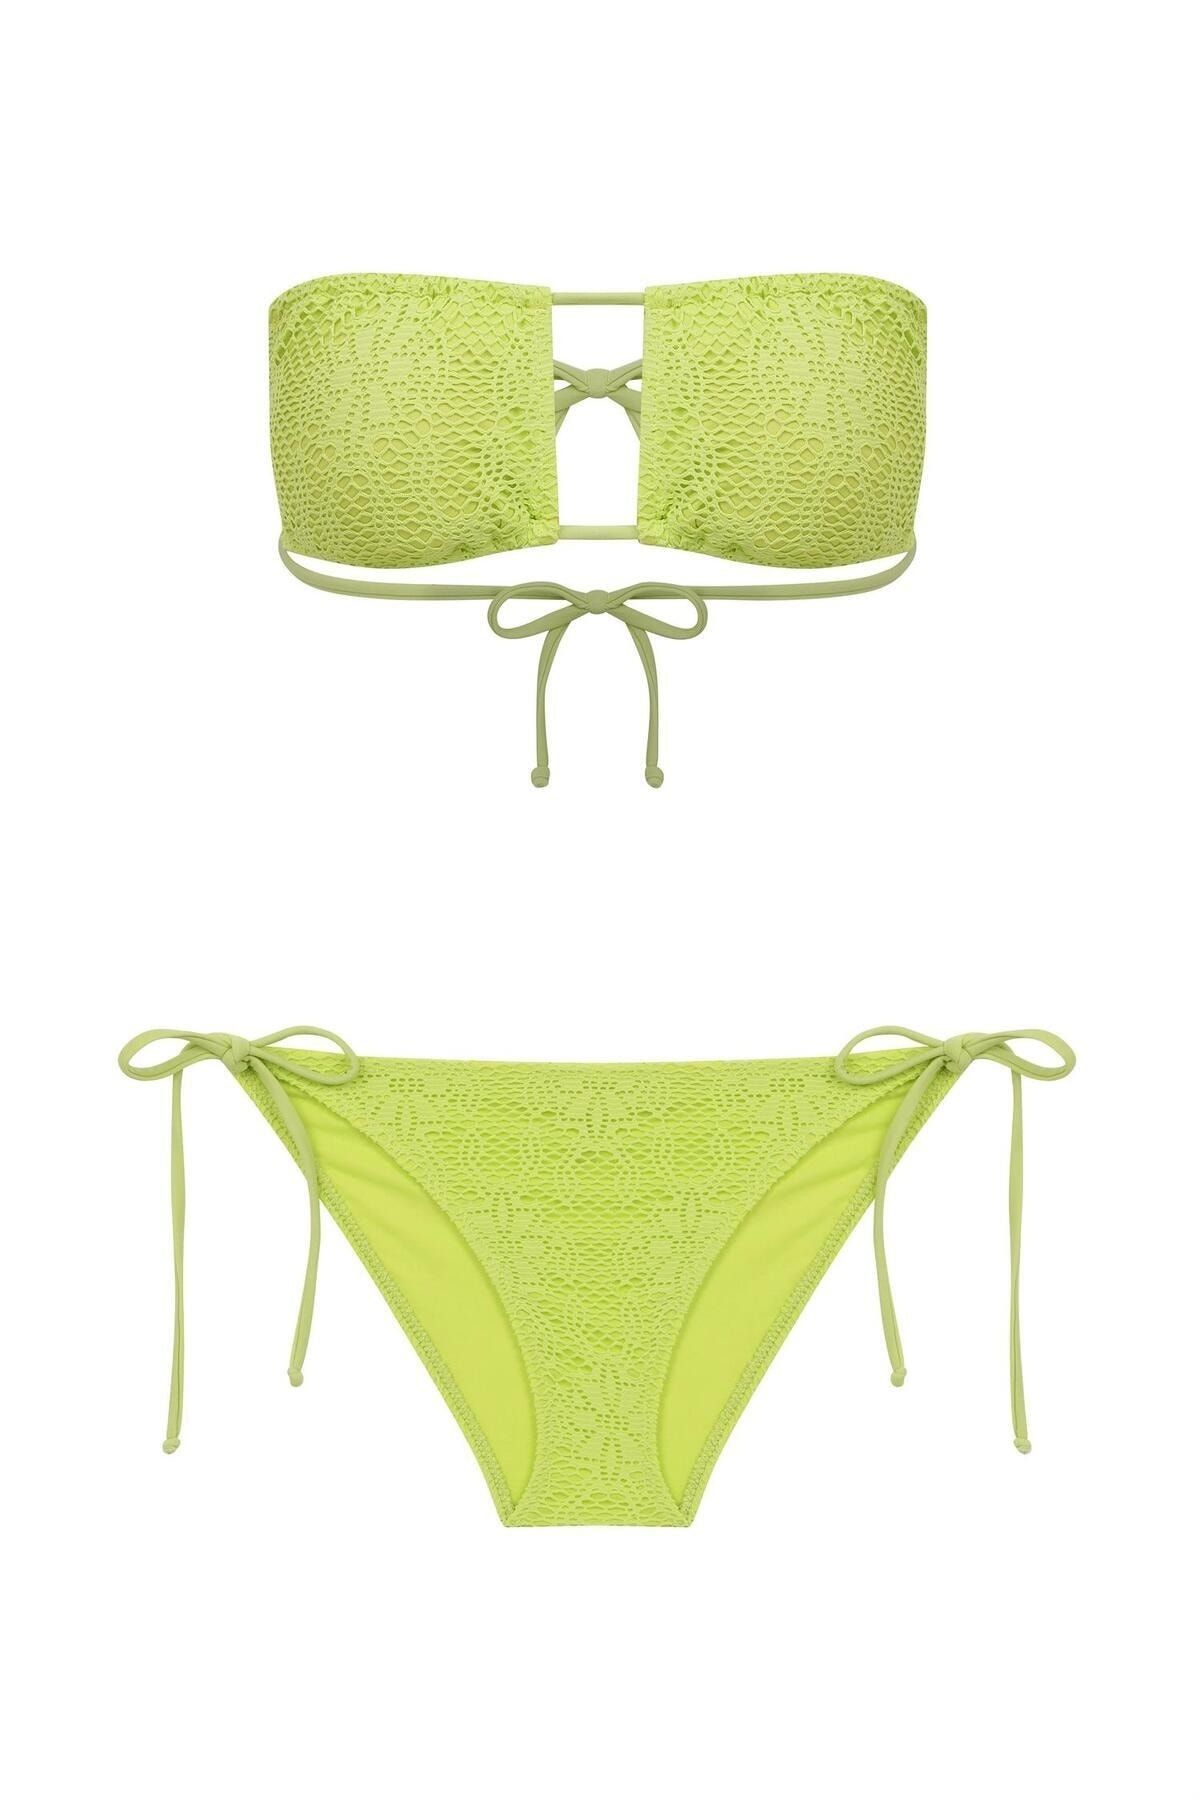 Aquella Straplez Neon Yeşil File Bikini Takım